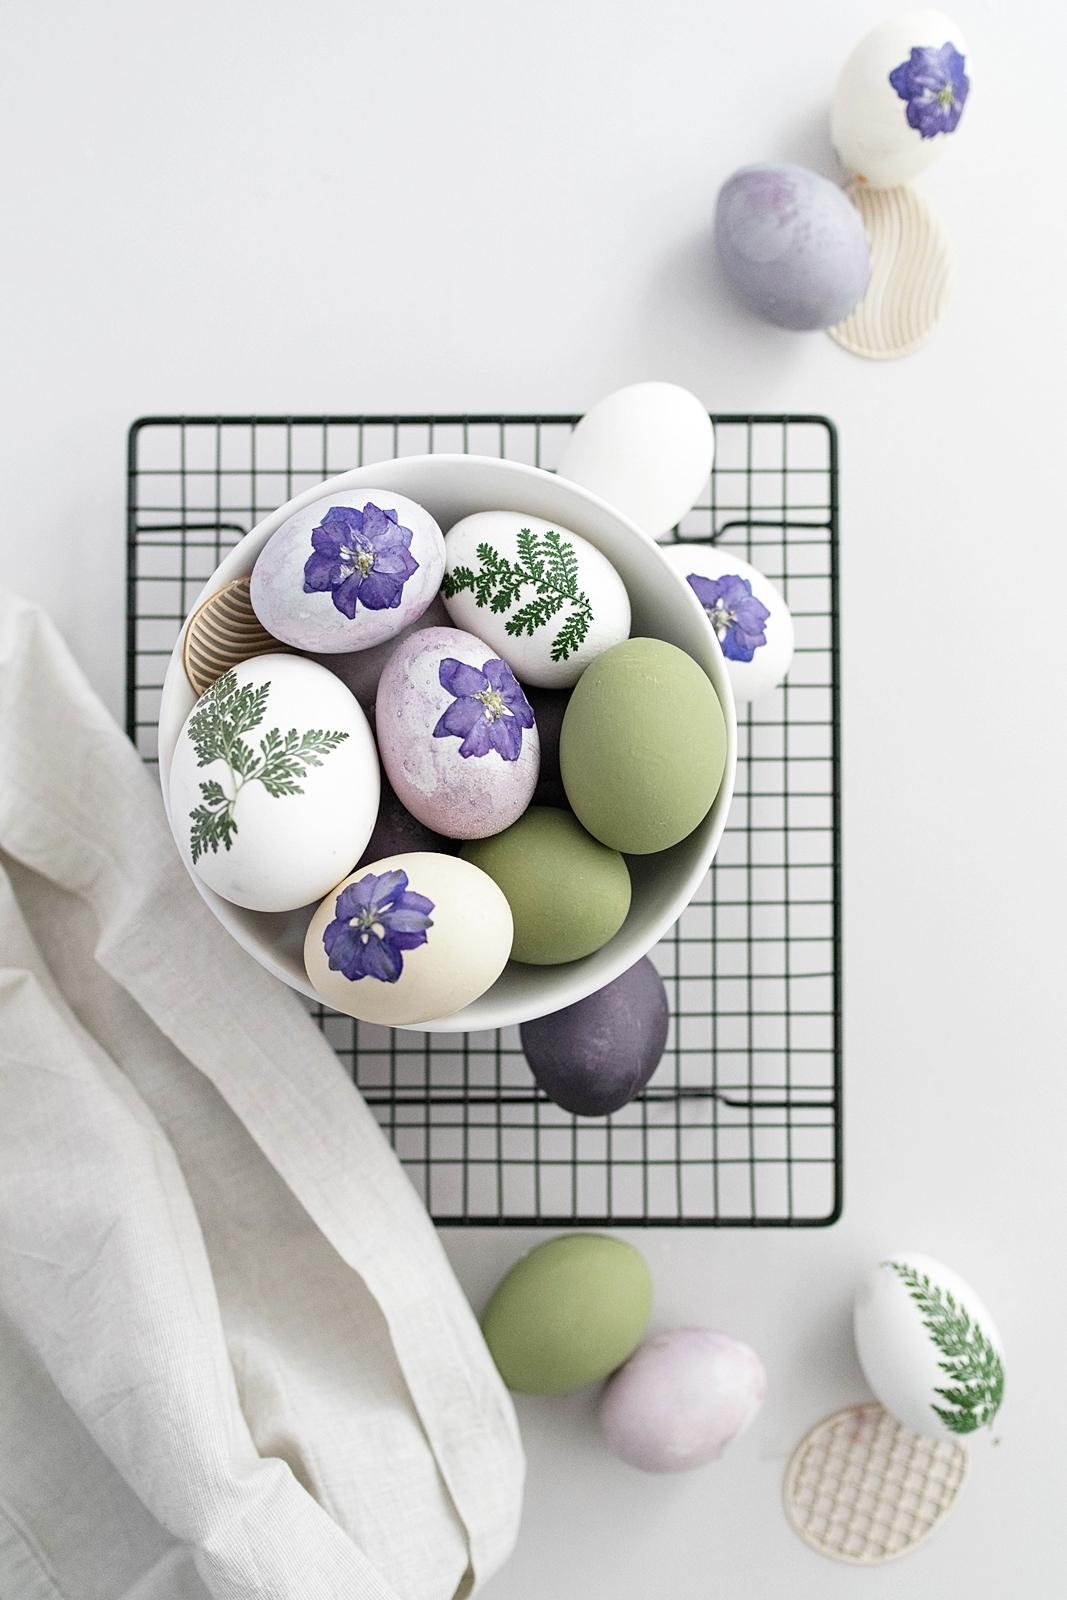 Geschmückte Eier für Ostern
#osterdeko #diy #eierfärben #eierdekorieren #farbenfroh #getrockneteblumen